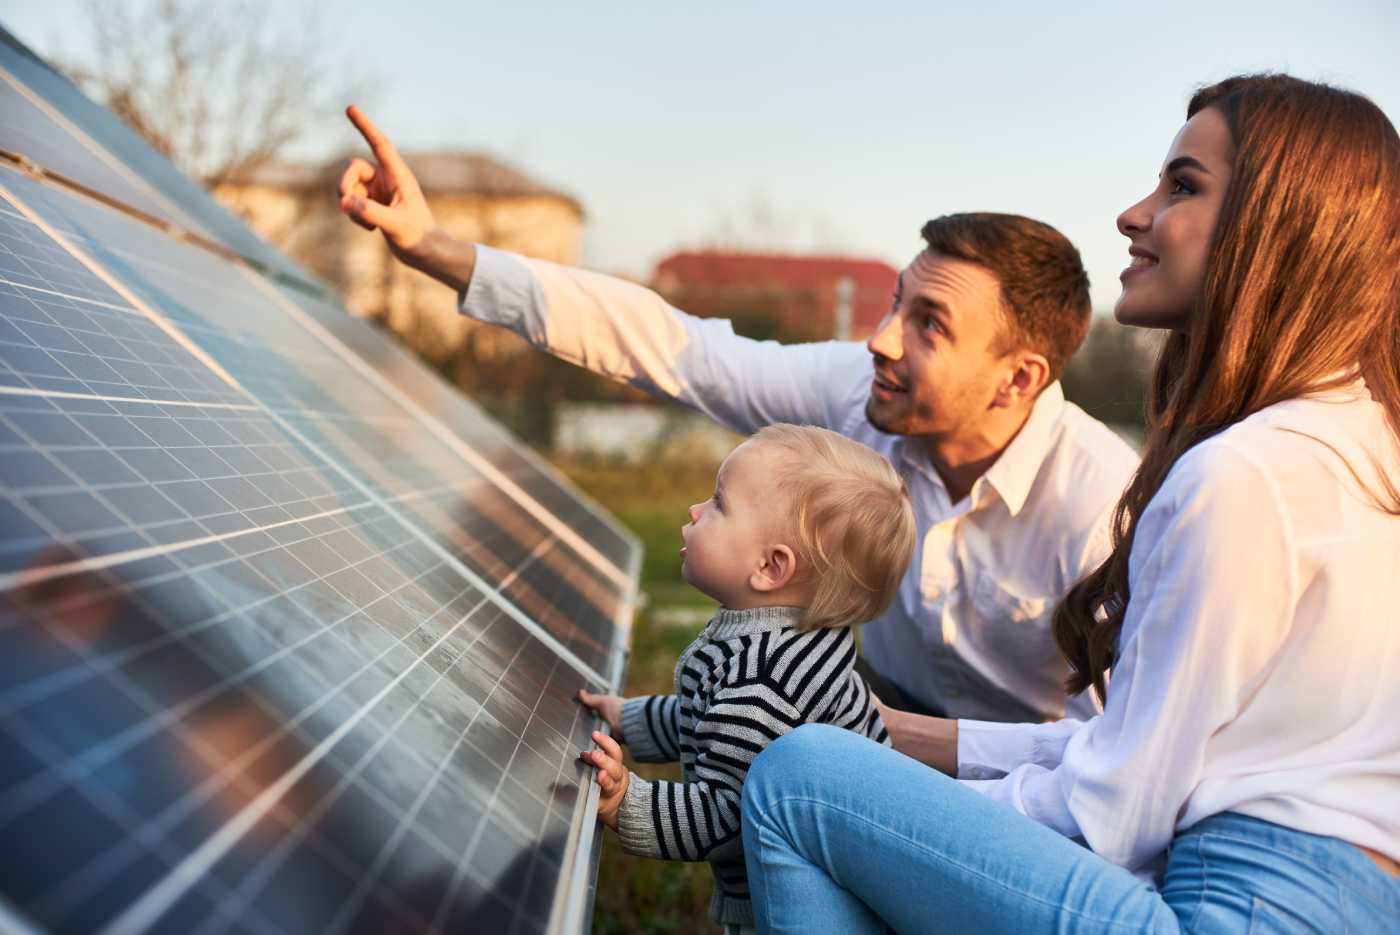 Benefits of solar energy in Massachusetts